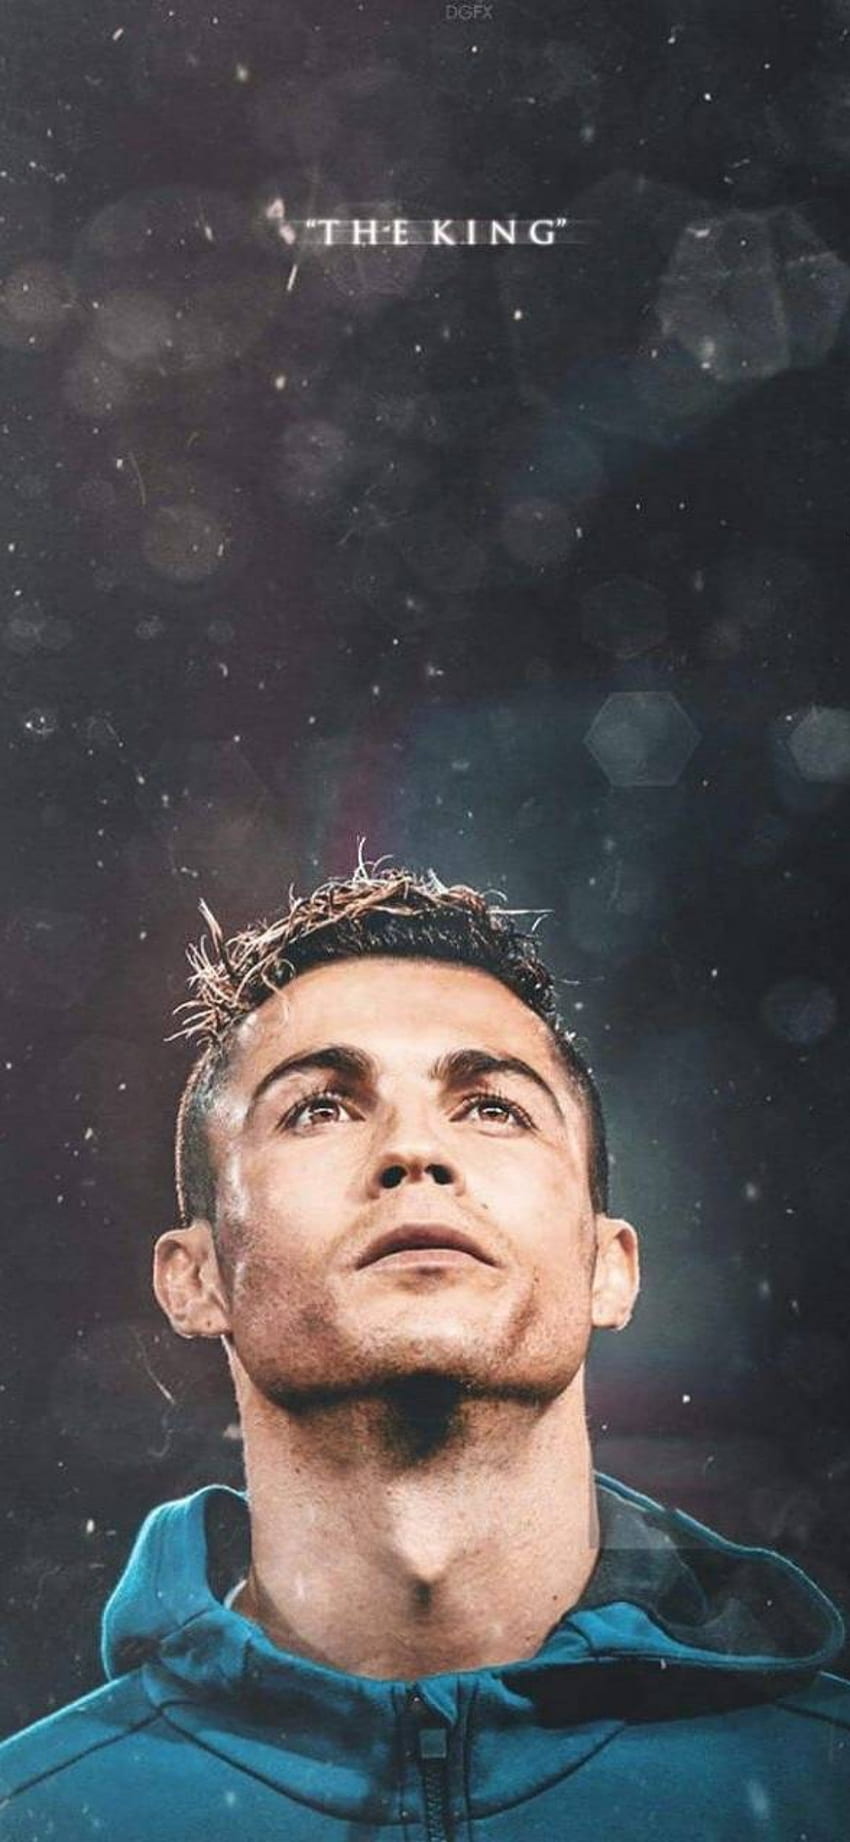 Nếu bạn là fan của Cristiano Ronaldo và đang sử dụng iPhone, thì đừng bỏ lỡ hình nền độc đáo của CR7 trên thiết bị của mình. Lấy cảm hứng từ cuộc đời và sự nghiệp của ngôi sao bóng đá này, hình nền sẽ giúp bạn tạo nên một không gian làm việc và giải trí tràn đầy cảm hứng.